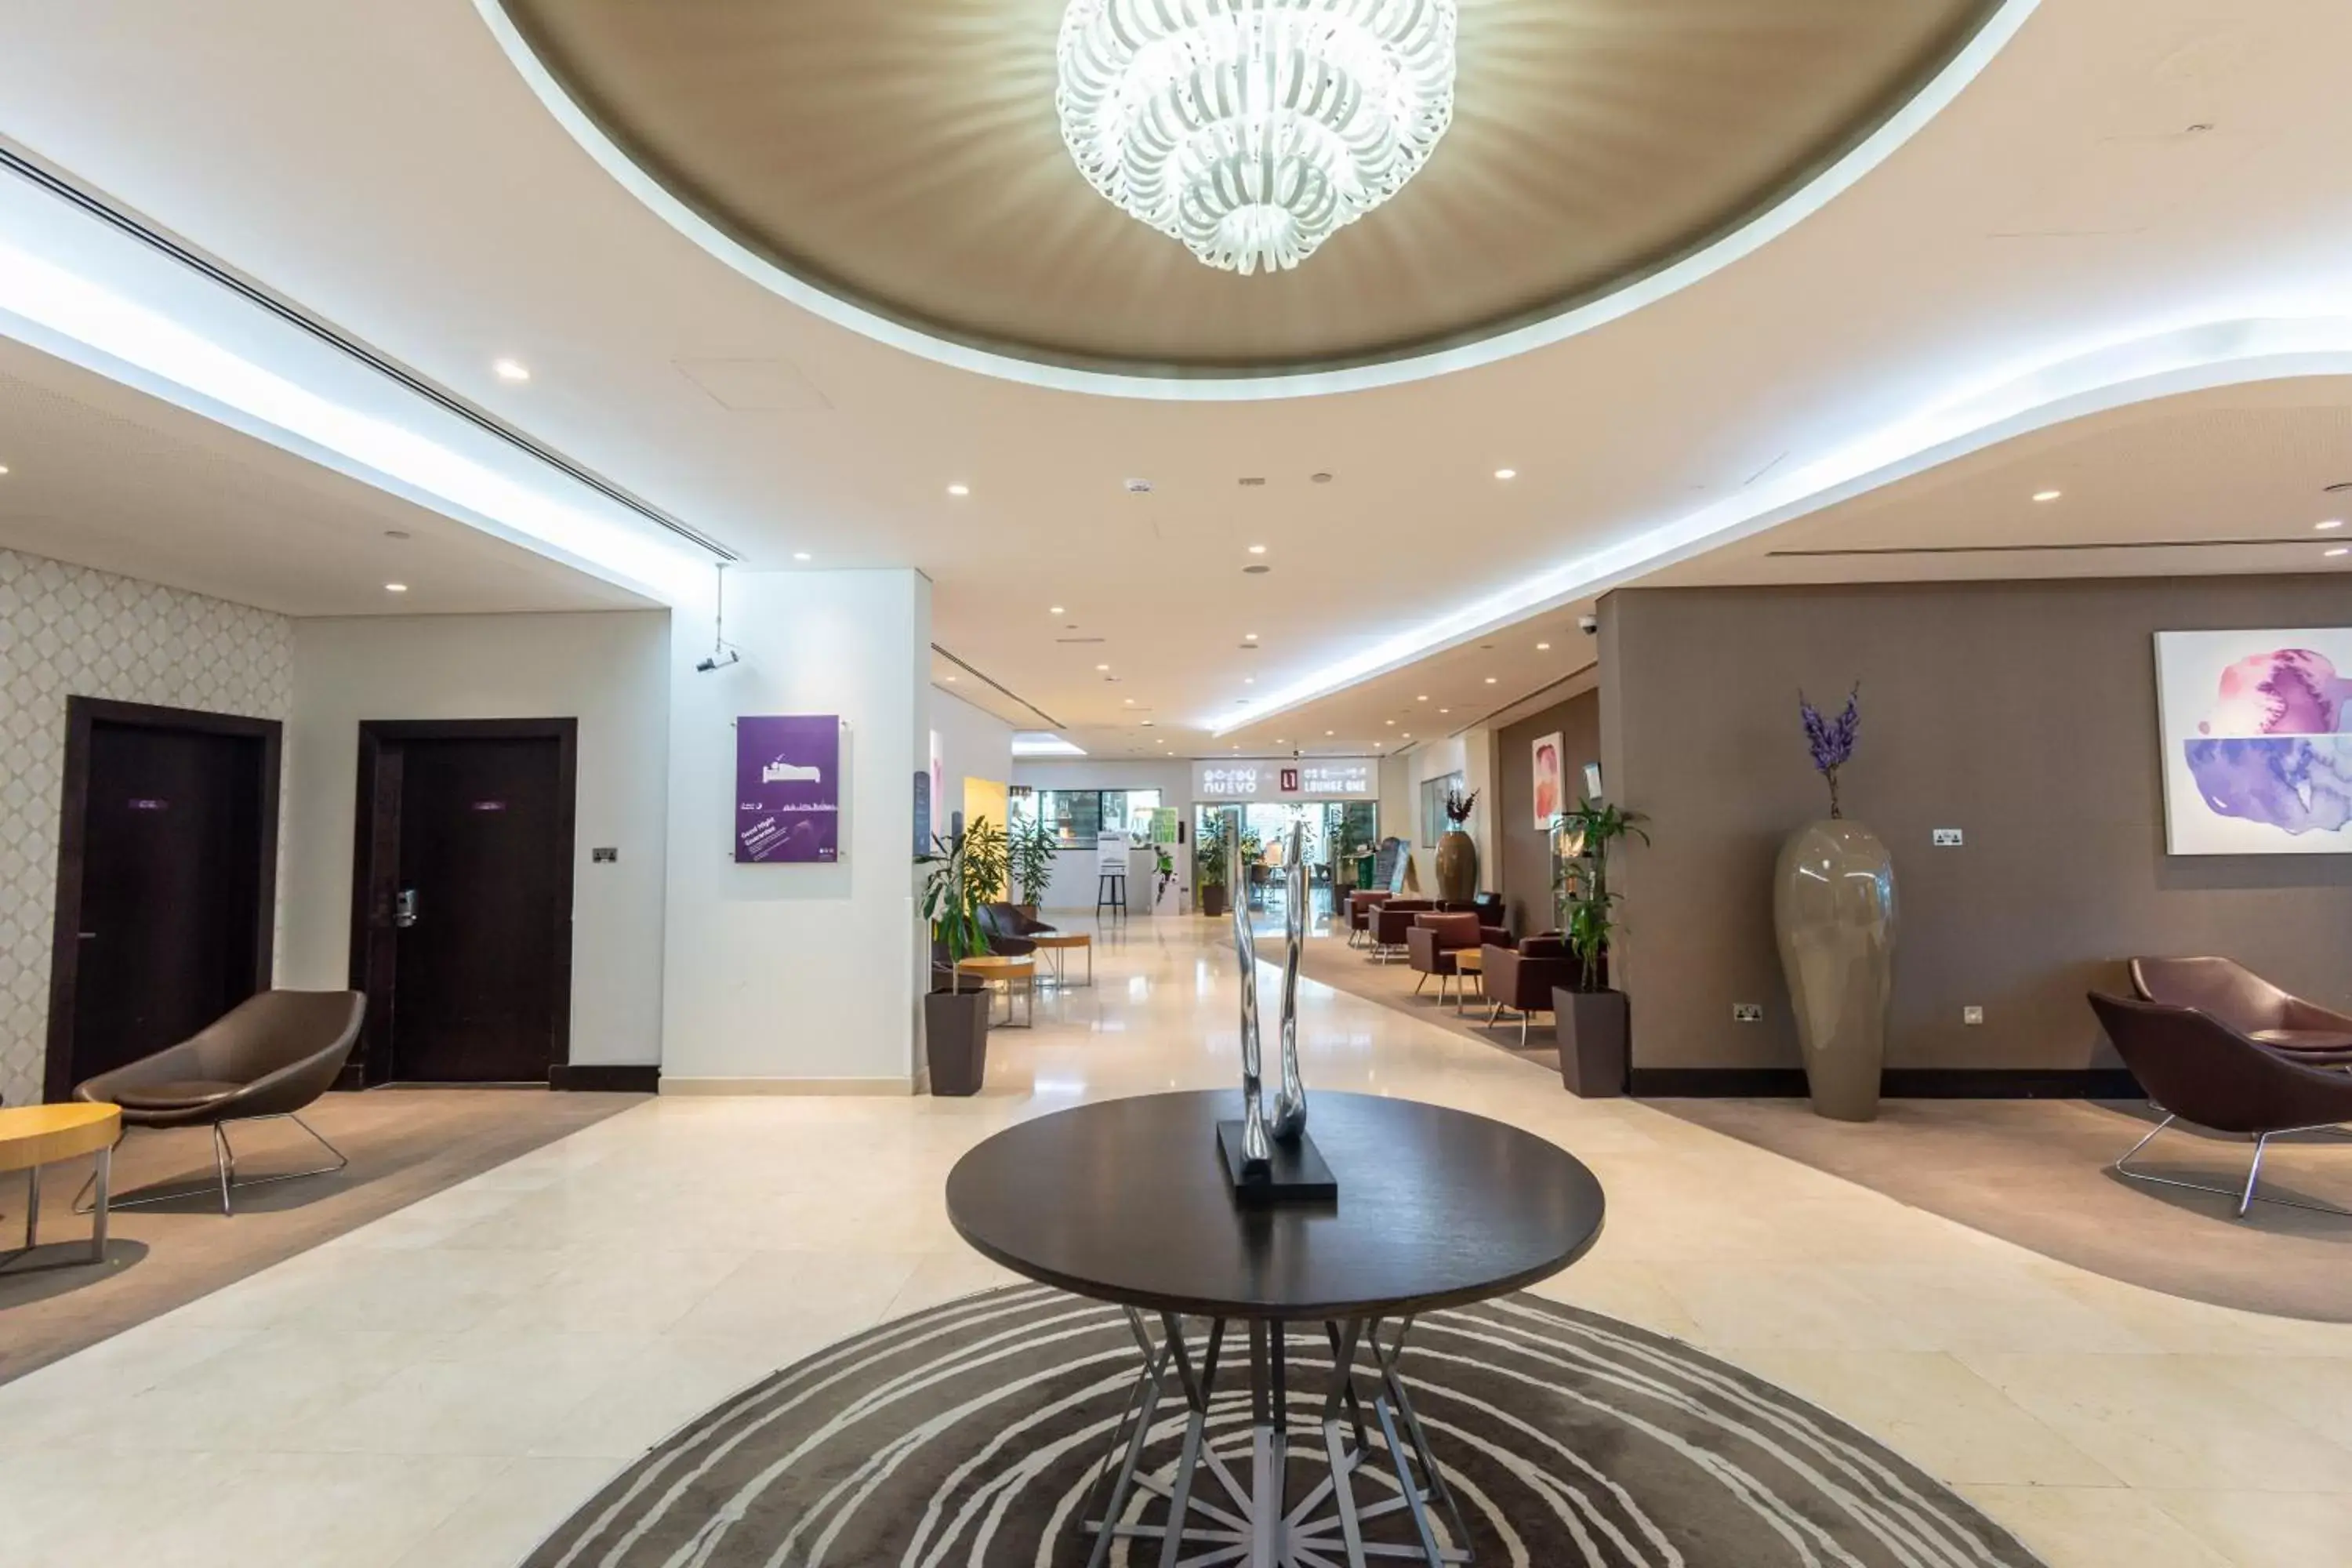 Lobby or reception, Lobby/Reception in Premier Inn Abu Dhabi International Airport